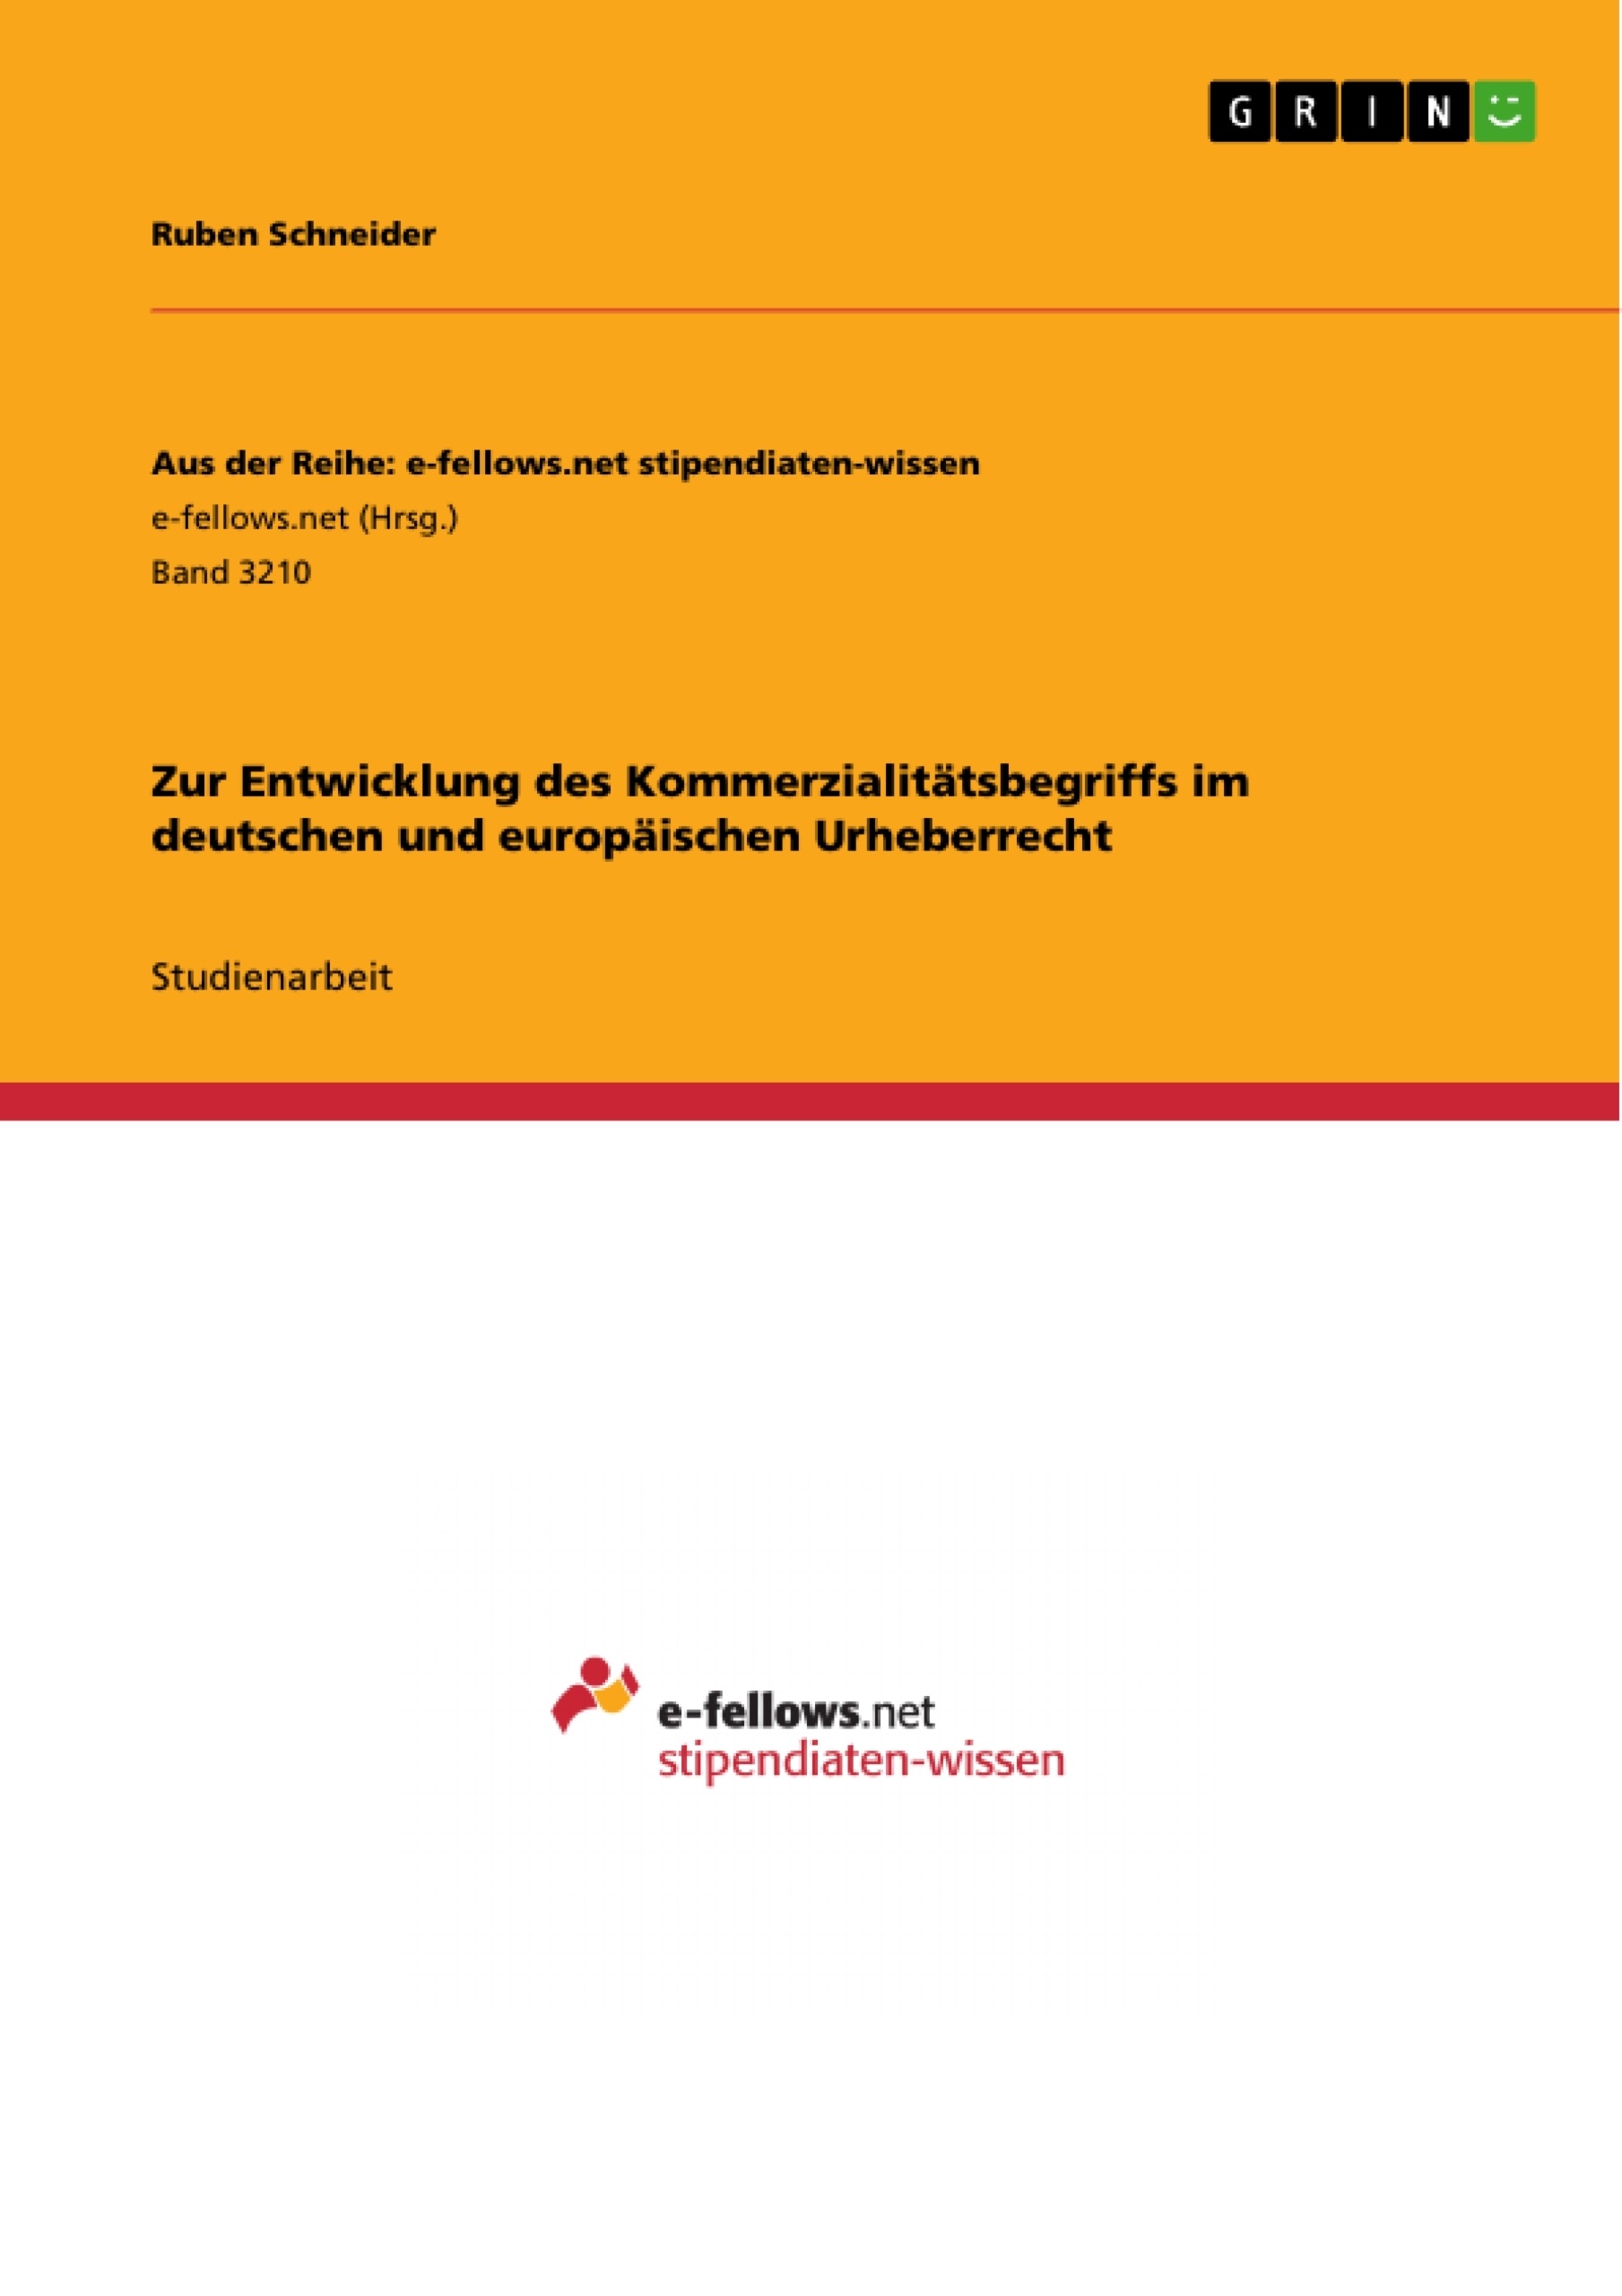 Título: Zur Entwicklung des Kommerzialitätsbegriffs im deutschen und europäischen Urheberrecht